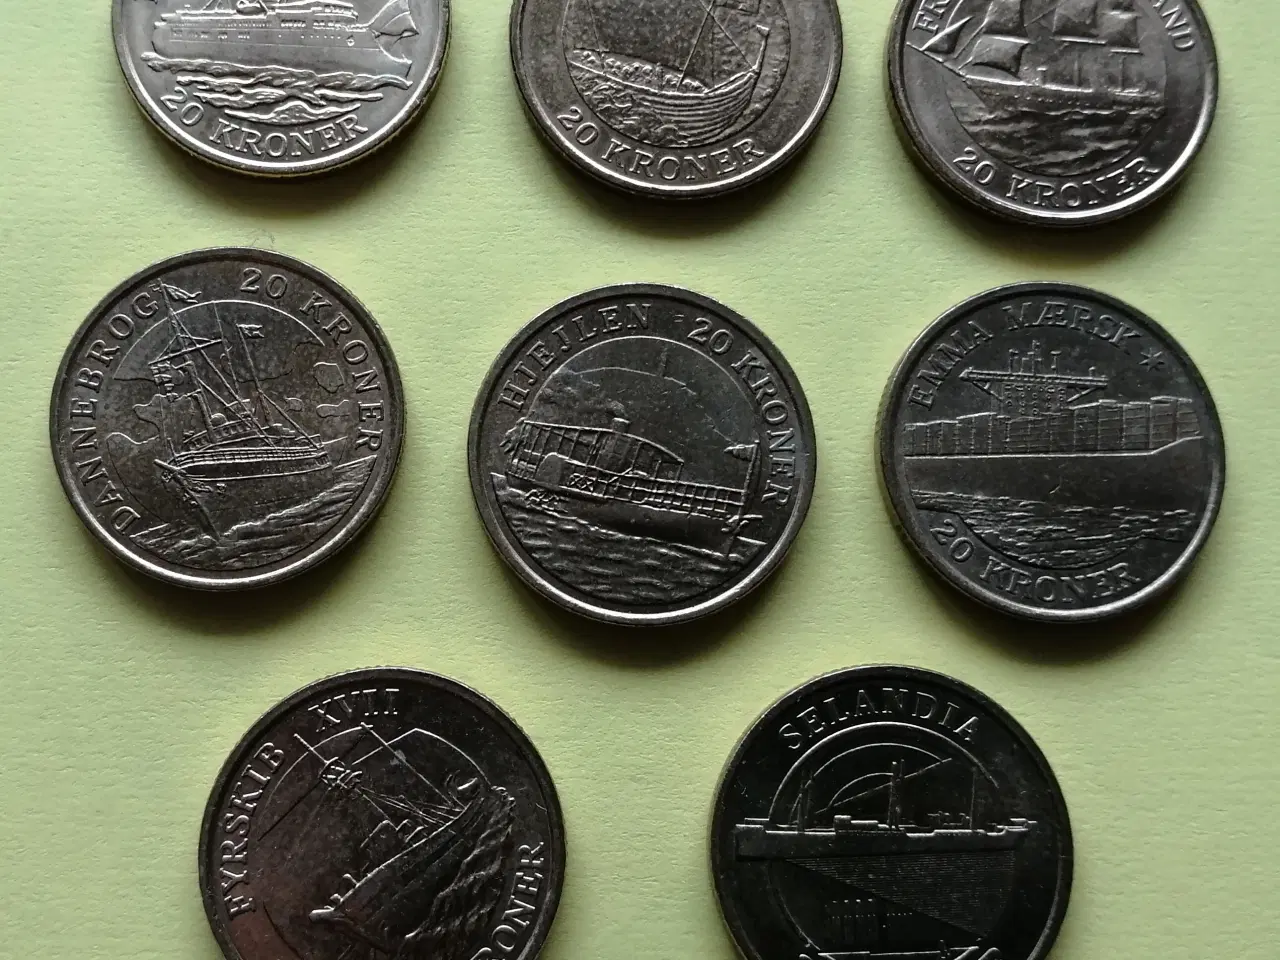 Billede 8 - Danske mønter og 10 kr. seddel